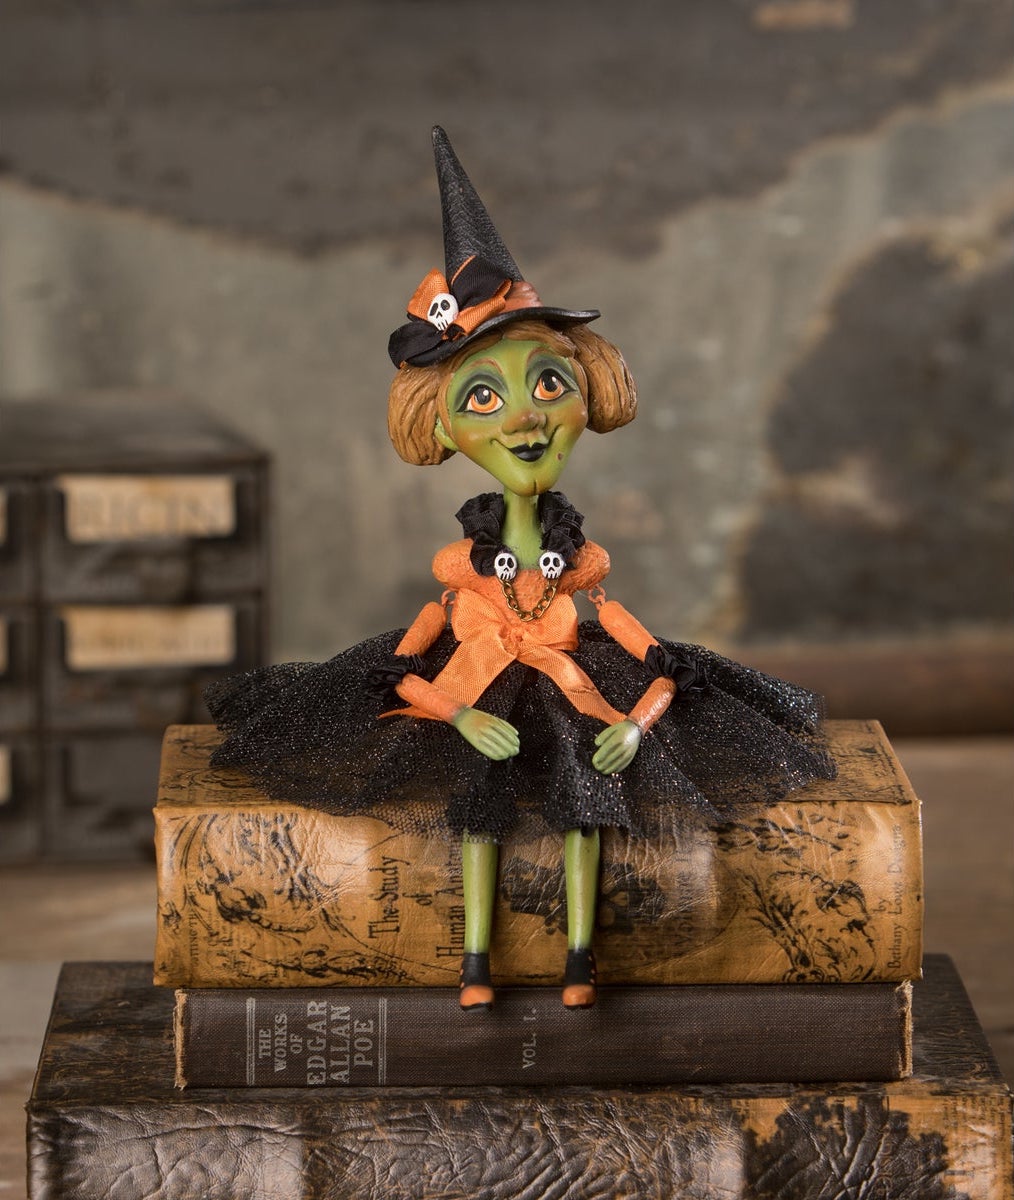 Penelope Witch Doll by LeeAnn Kress